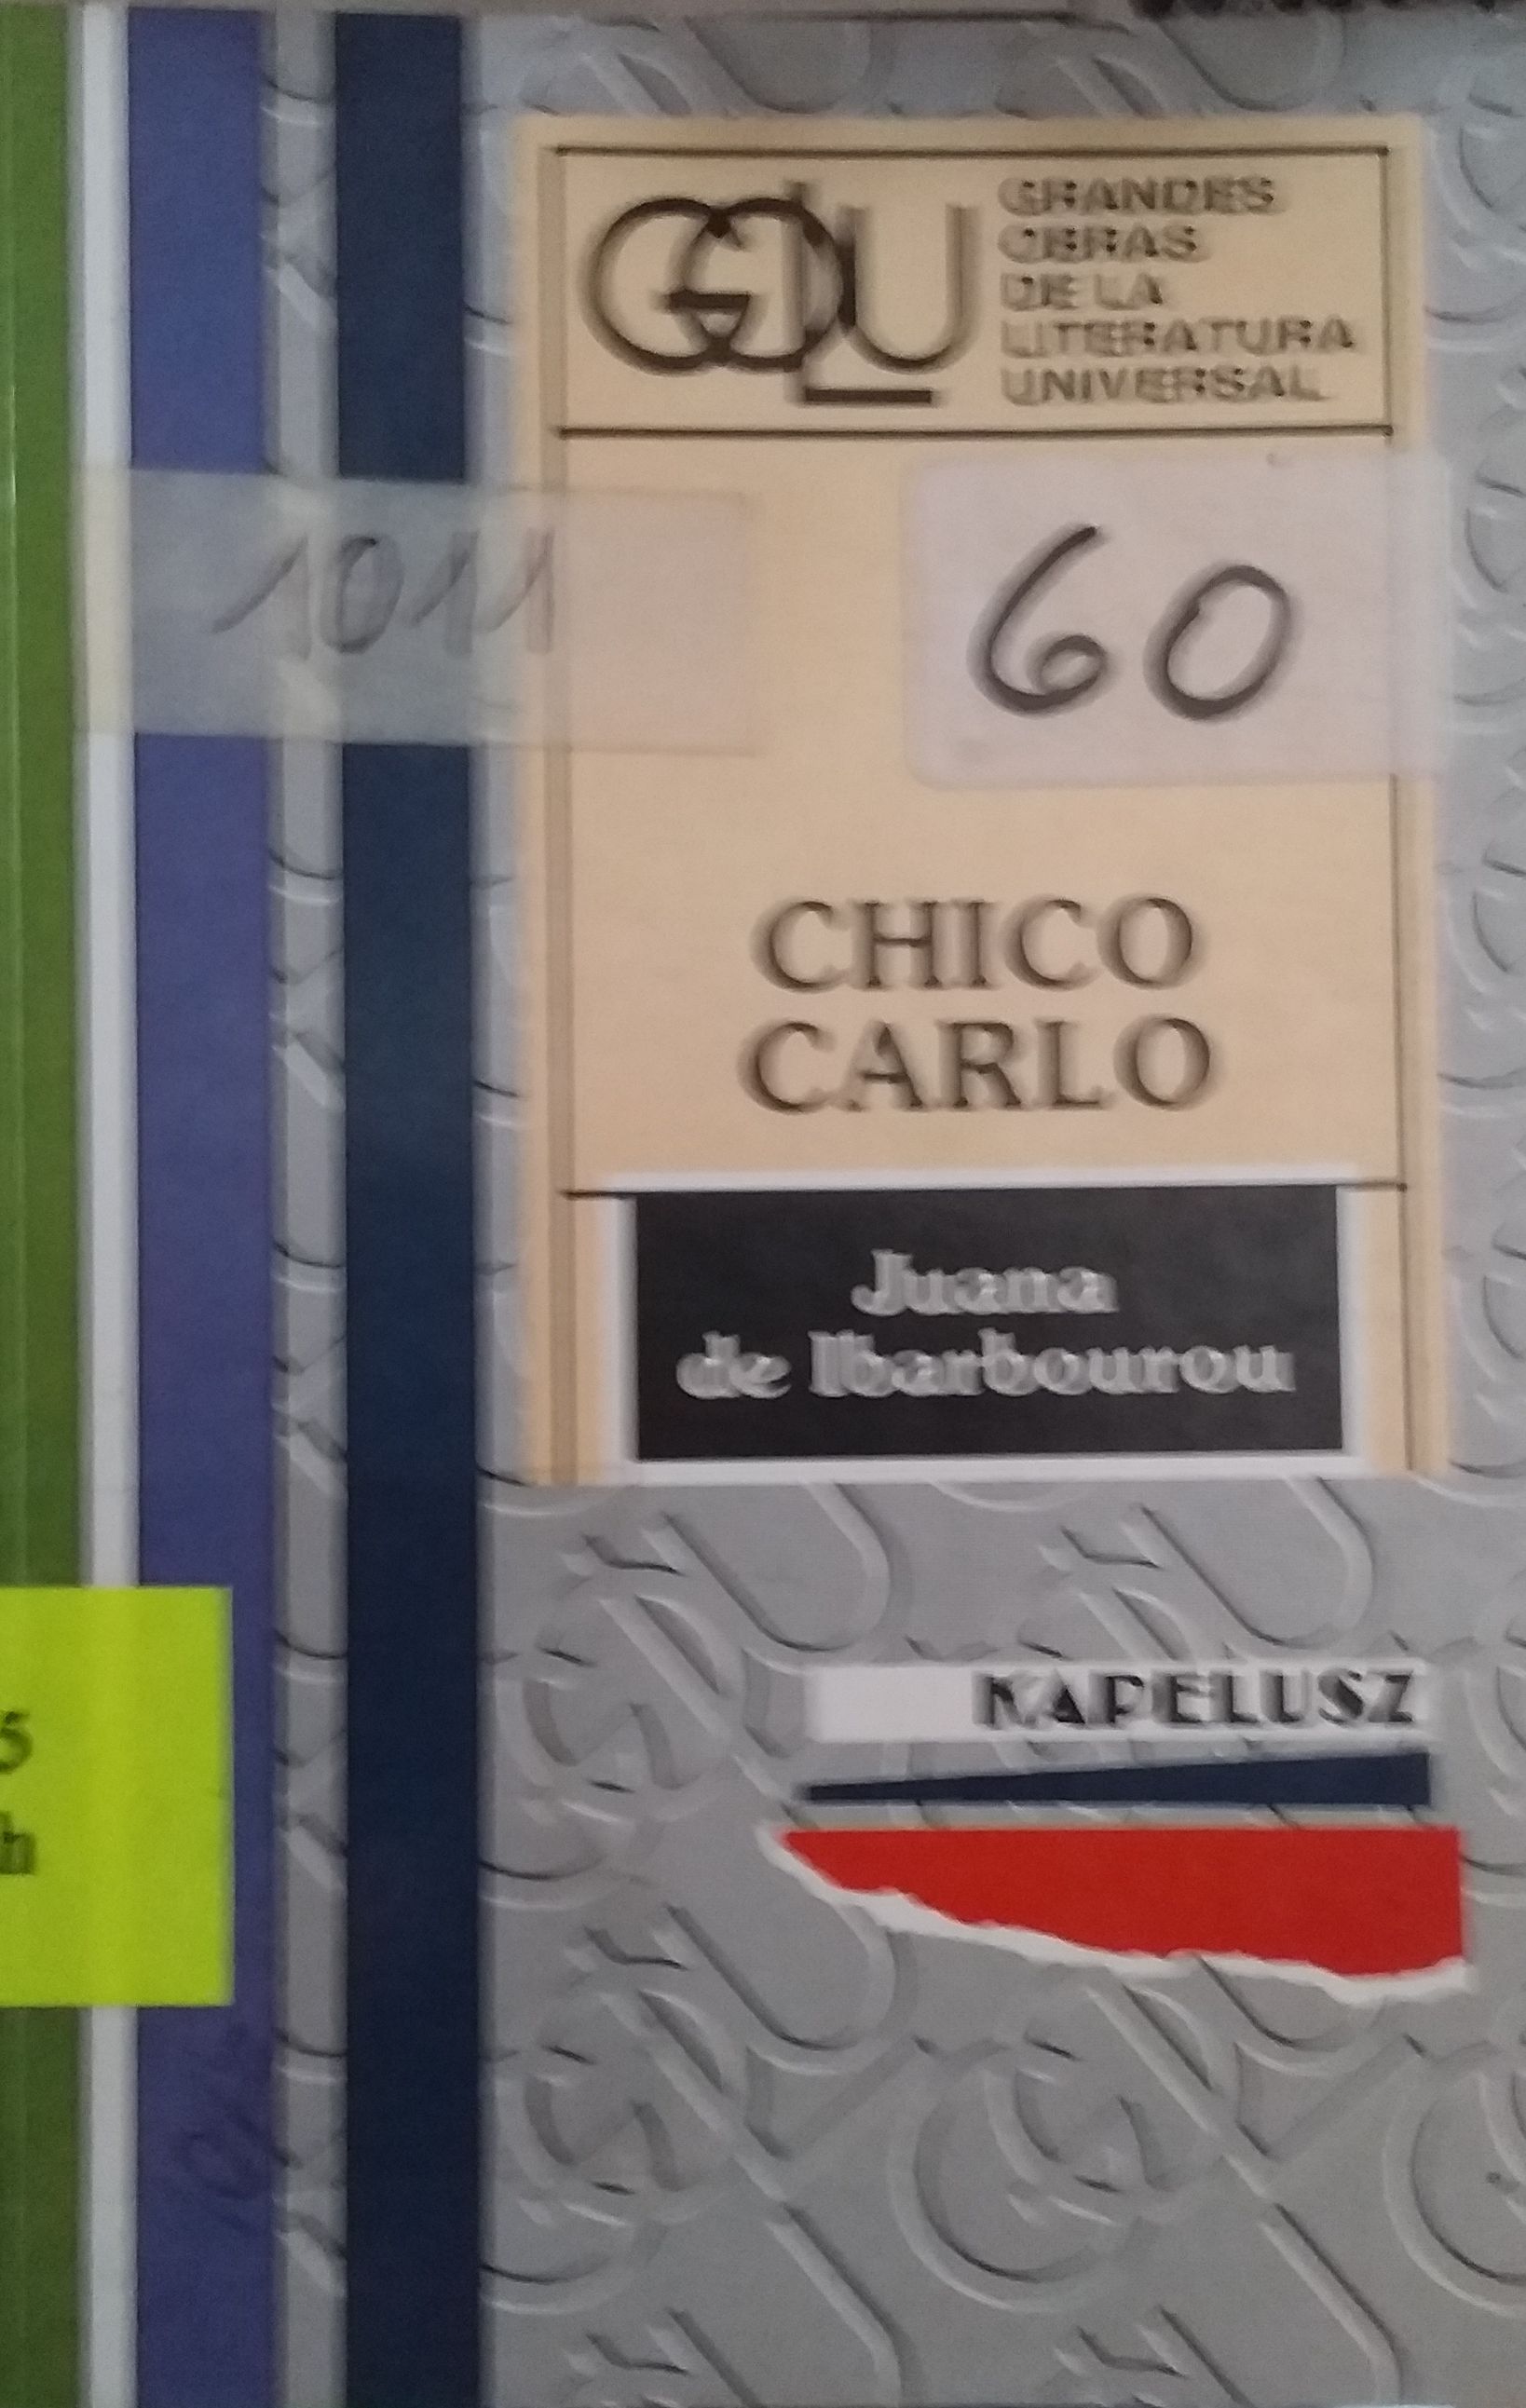 Chico Carlo